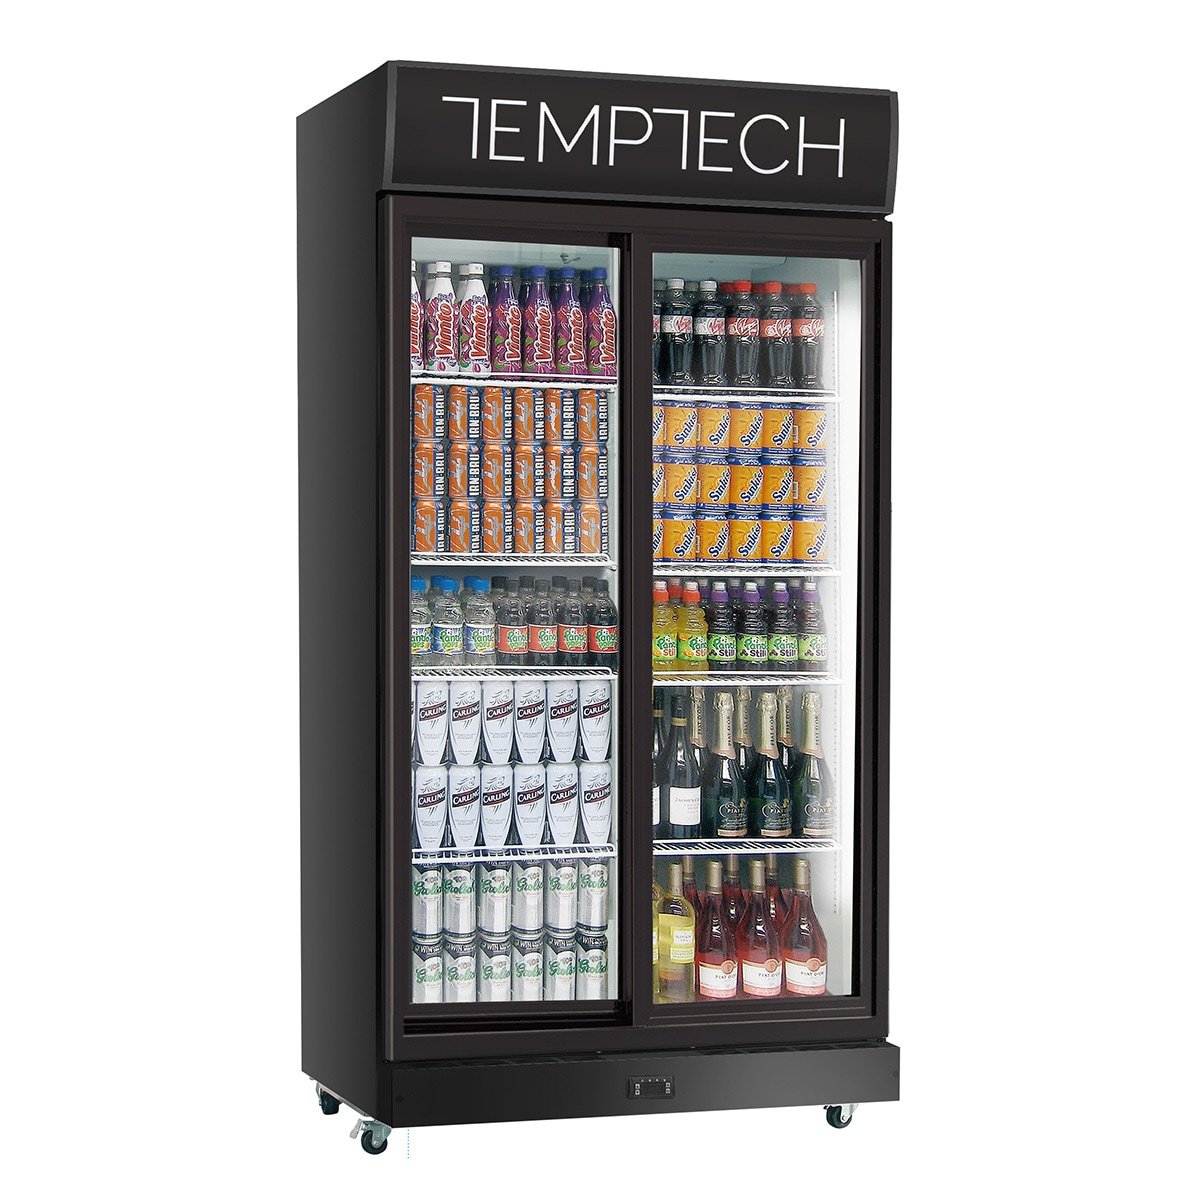 Temptech C800S kjøleskap - Elkjøp